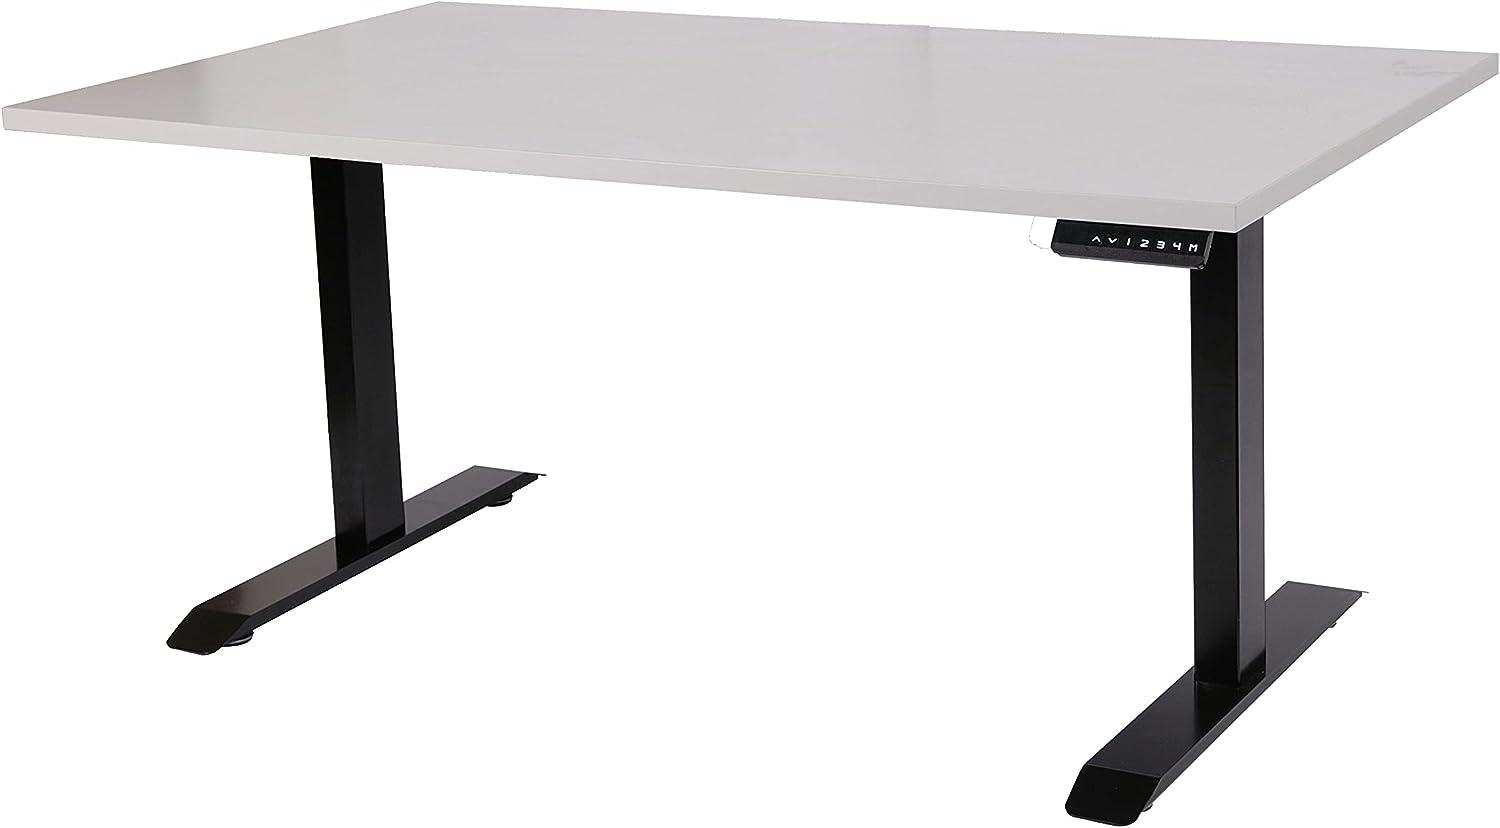 Szagato Schreibtisch stufenlos elektrisch höhenverstellbar BxTxH: 120x80x(64,5-129,5) cm schwarz, mit Memory-Funktion inkl. Tischplatte Stärke 2,5 cm (Stischgestell, Steh-Sitz Tisch) Bild 1